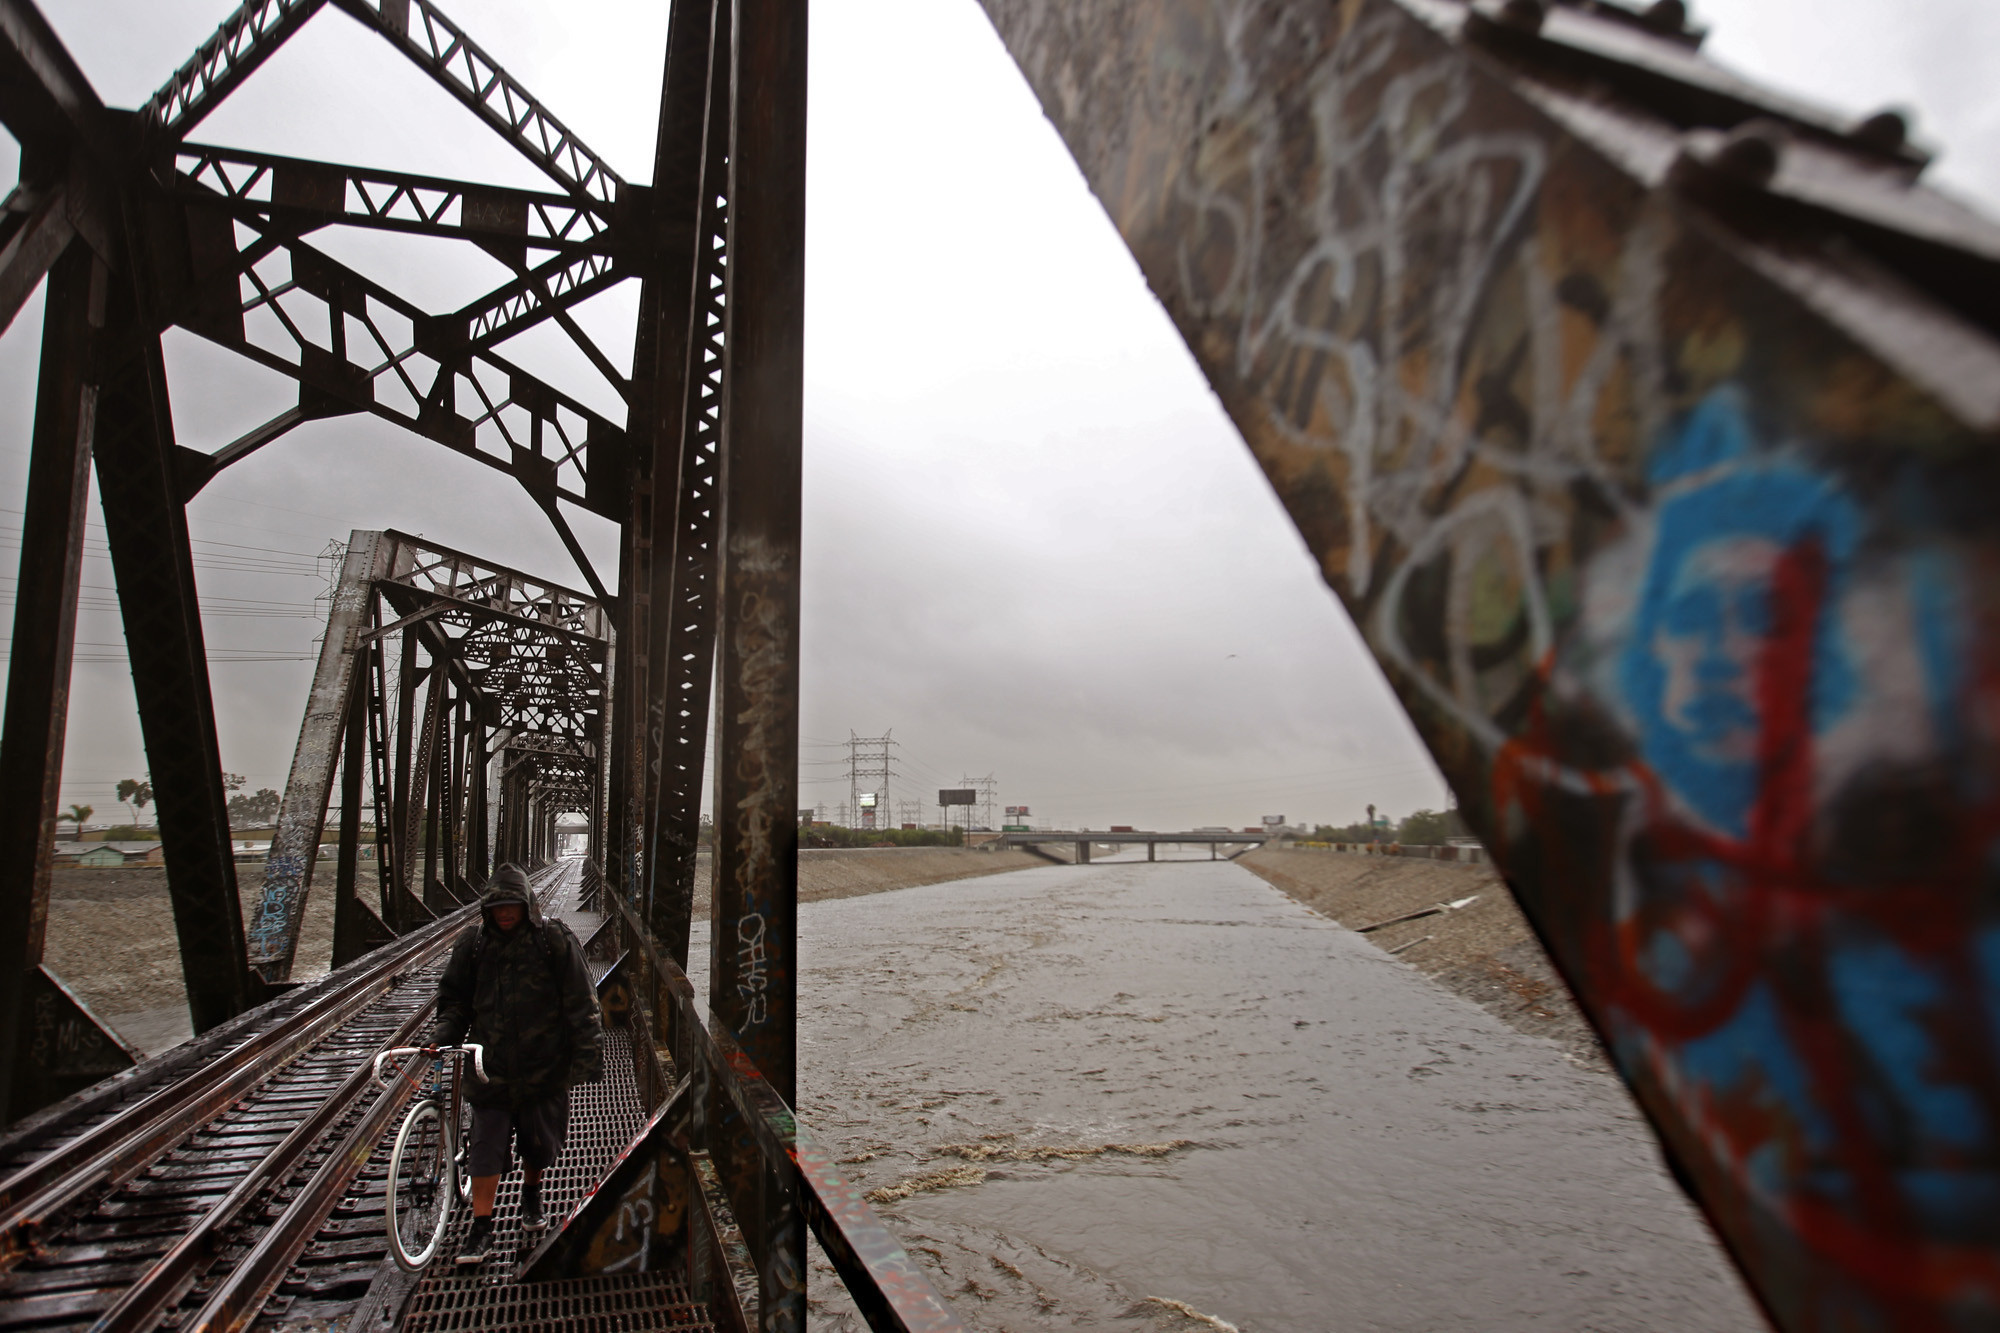 El Niño rains get L.A. River roaring to life